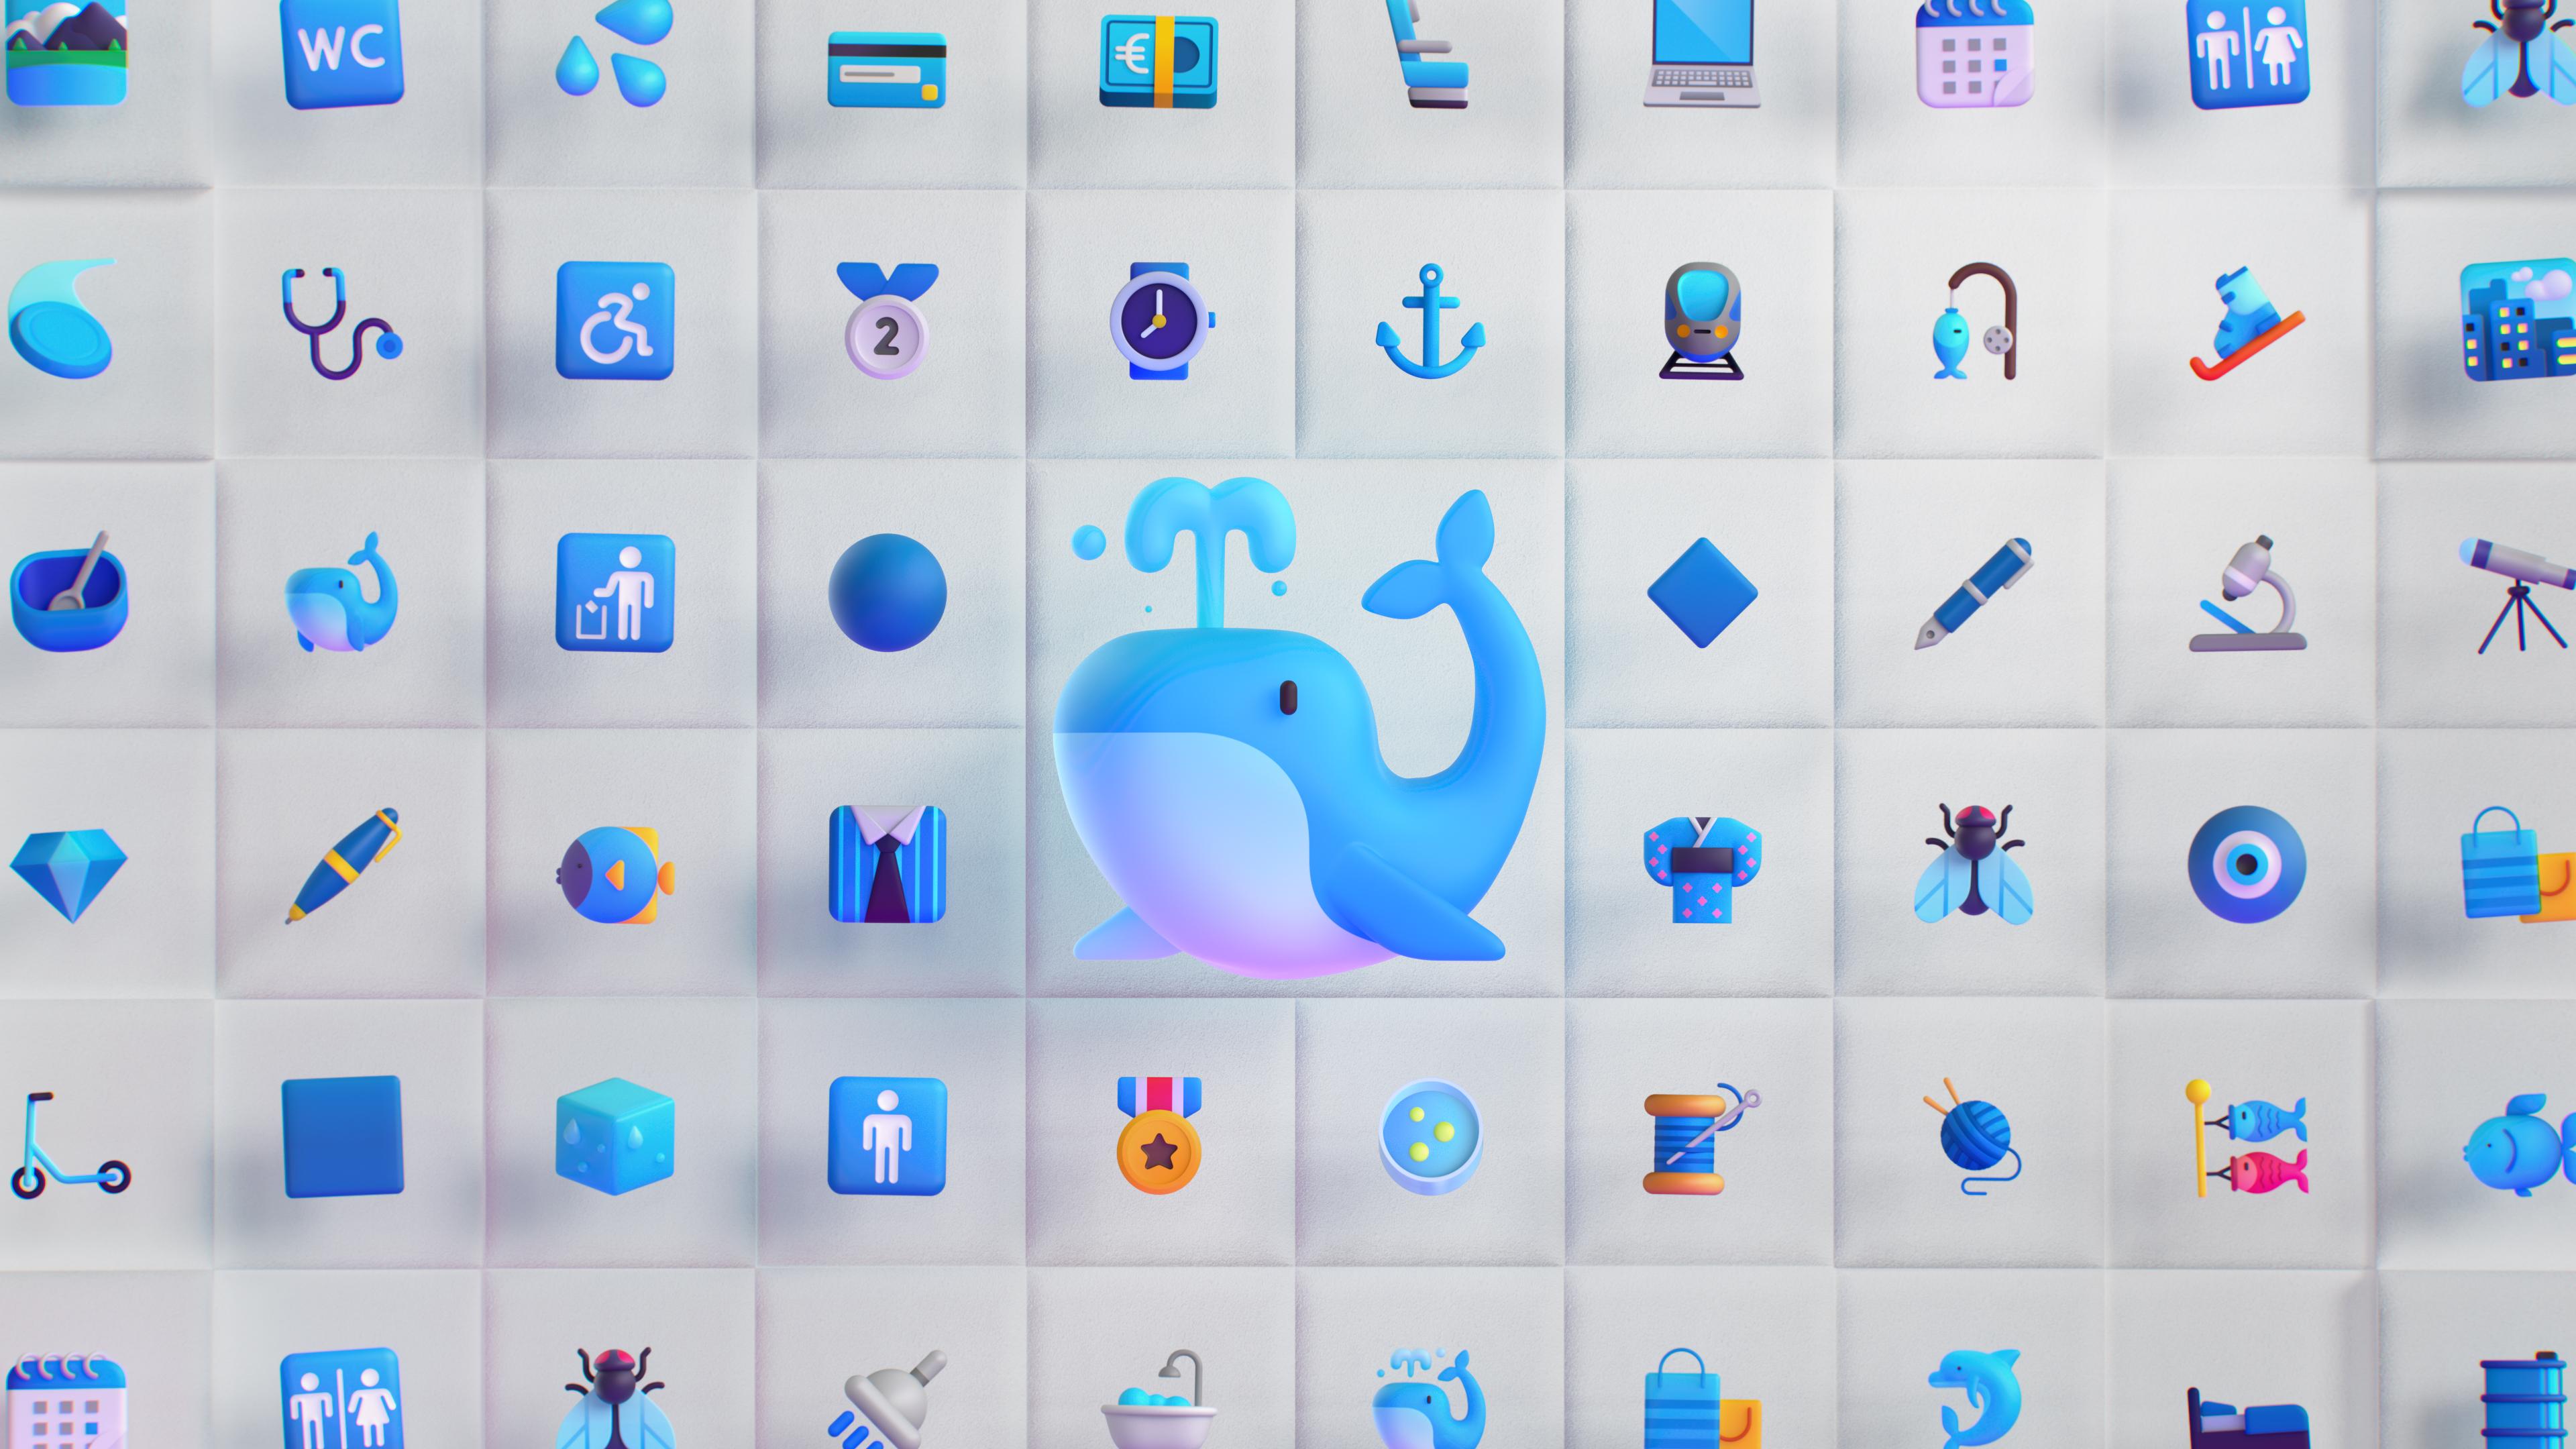 HD wallpaper, Emoji, Icons, Blue, Shapes